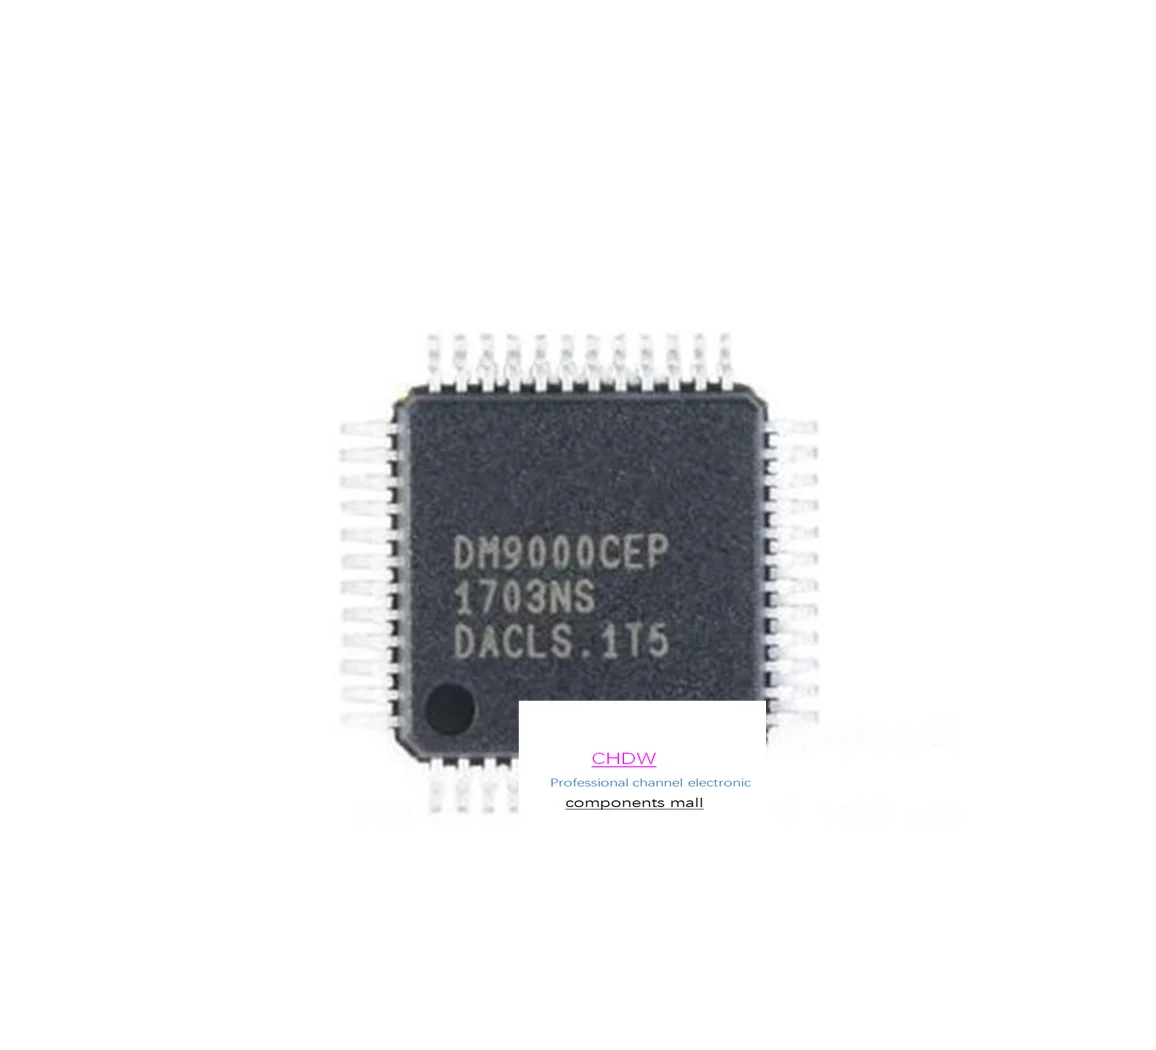 DM9000CEP DM9000 QFP48 НОВЫЙ И ОРИГИНАЛЬНЫЙ В НАЛИЧИИ микросхема ФЛЭШ памяти